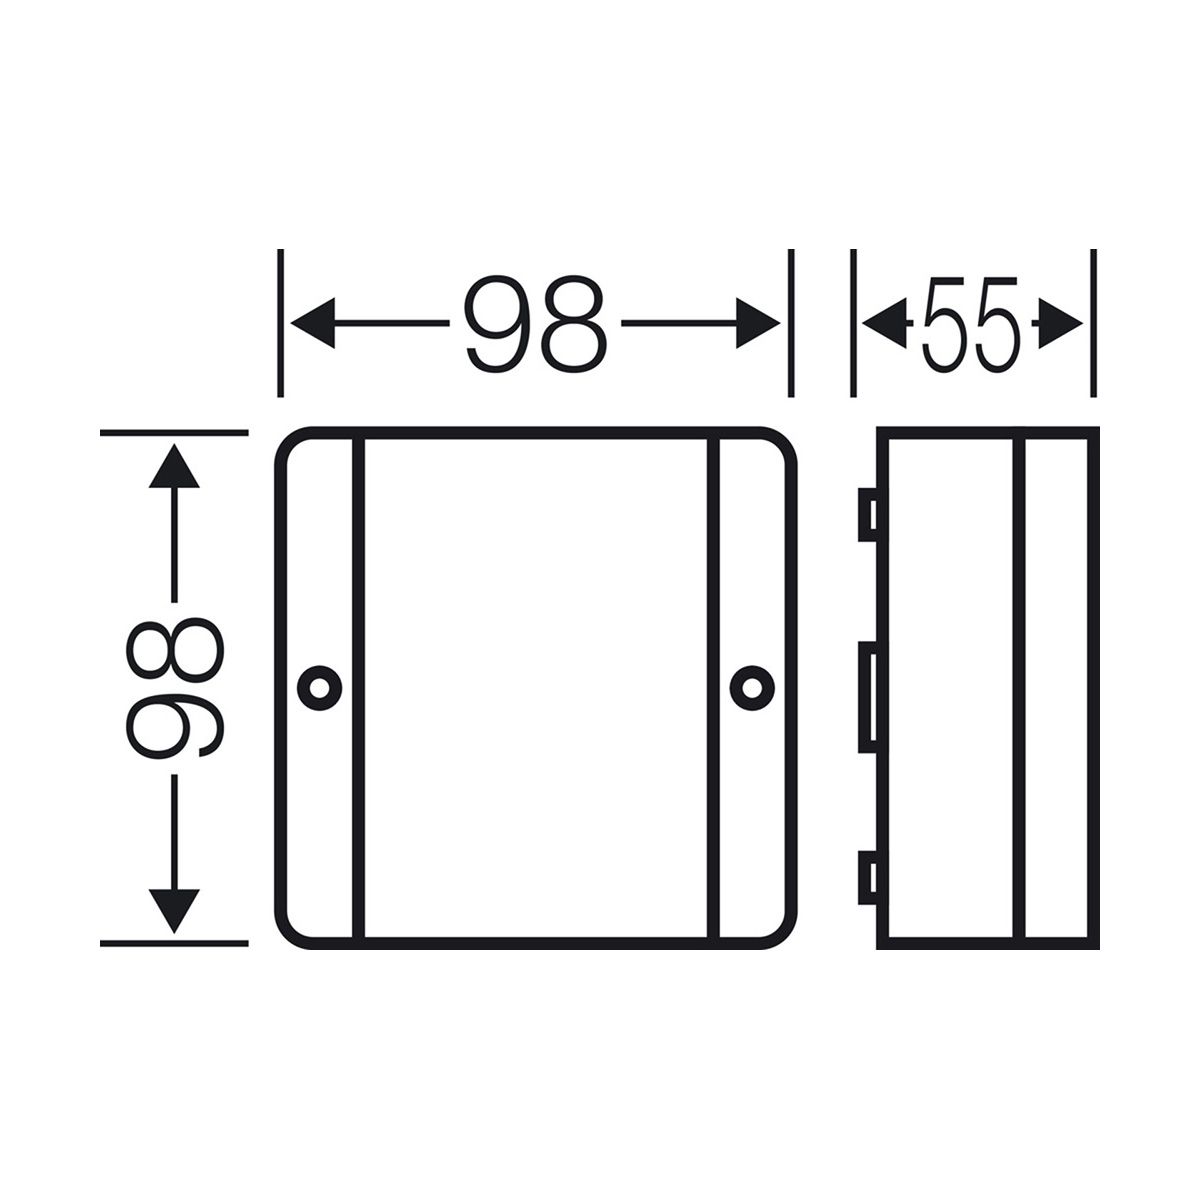 Розподільна коробка DE9340 98x98x55 мм, IP55, без клемника, світло-сіра RAL 7035 | HENSEL